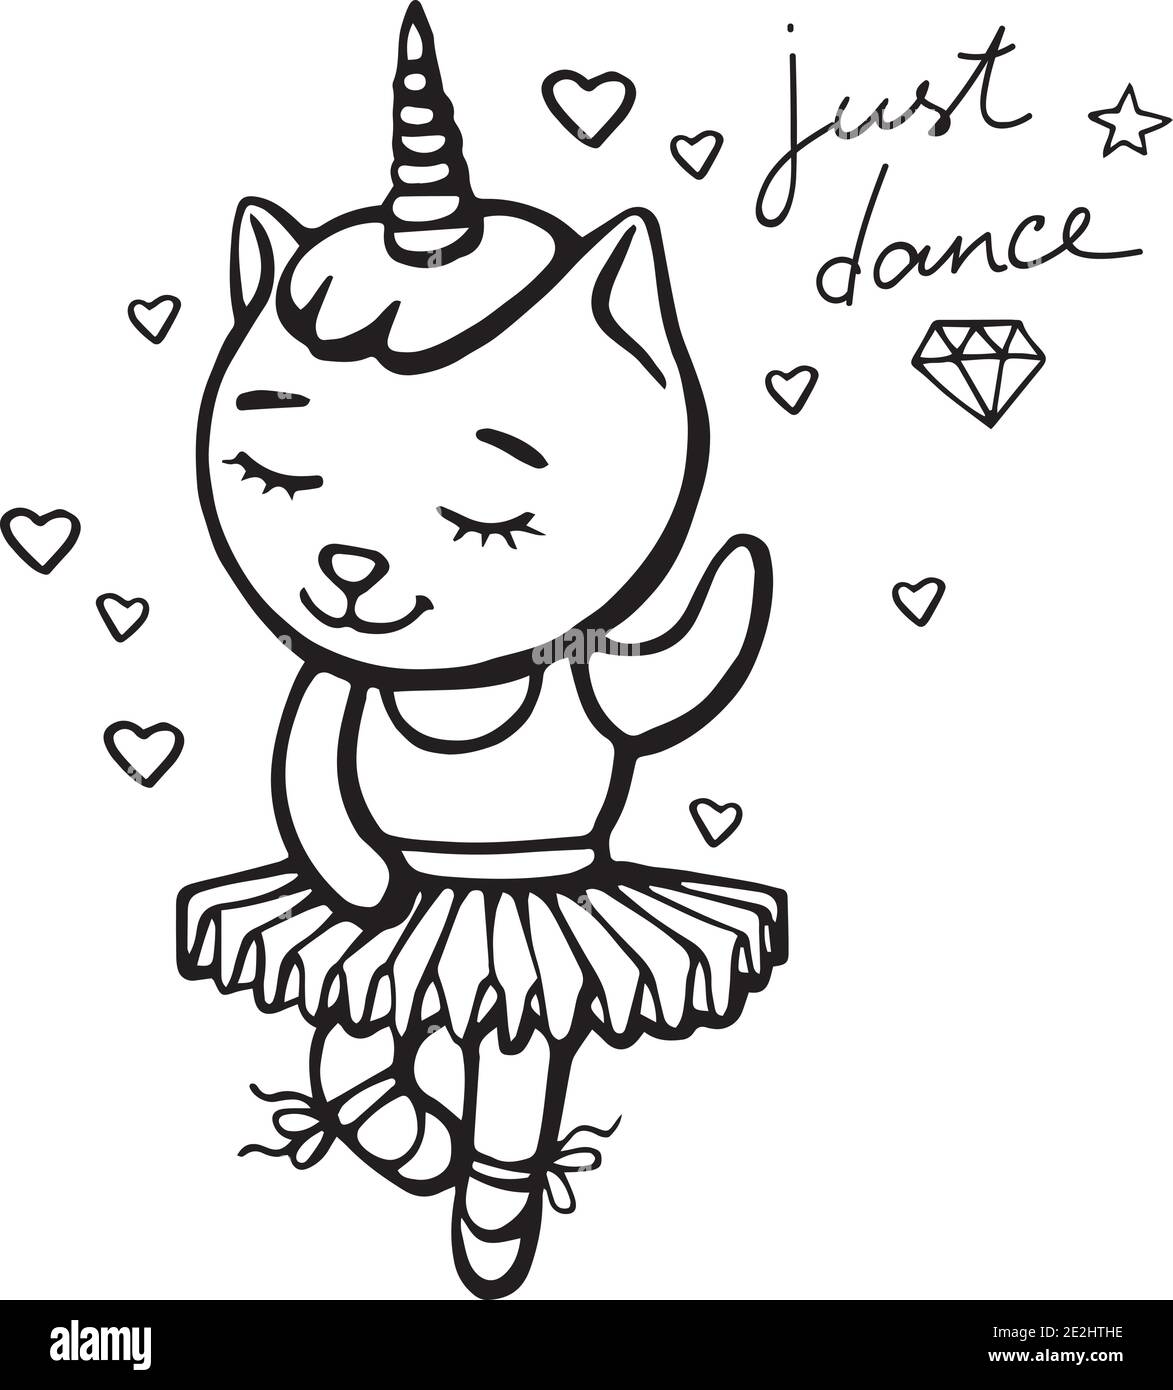 Niedliche weiße tanzende Katze Einhorn mit Horn auf weißem Hintergrund mit Herzen. Handgezeichnete Vektor-Illustration für T-Shirt-Druck und Stickerei. Stock Vektor